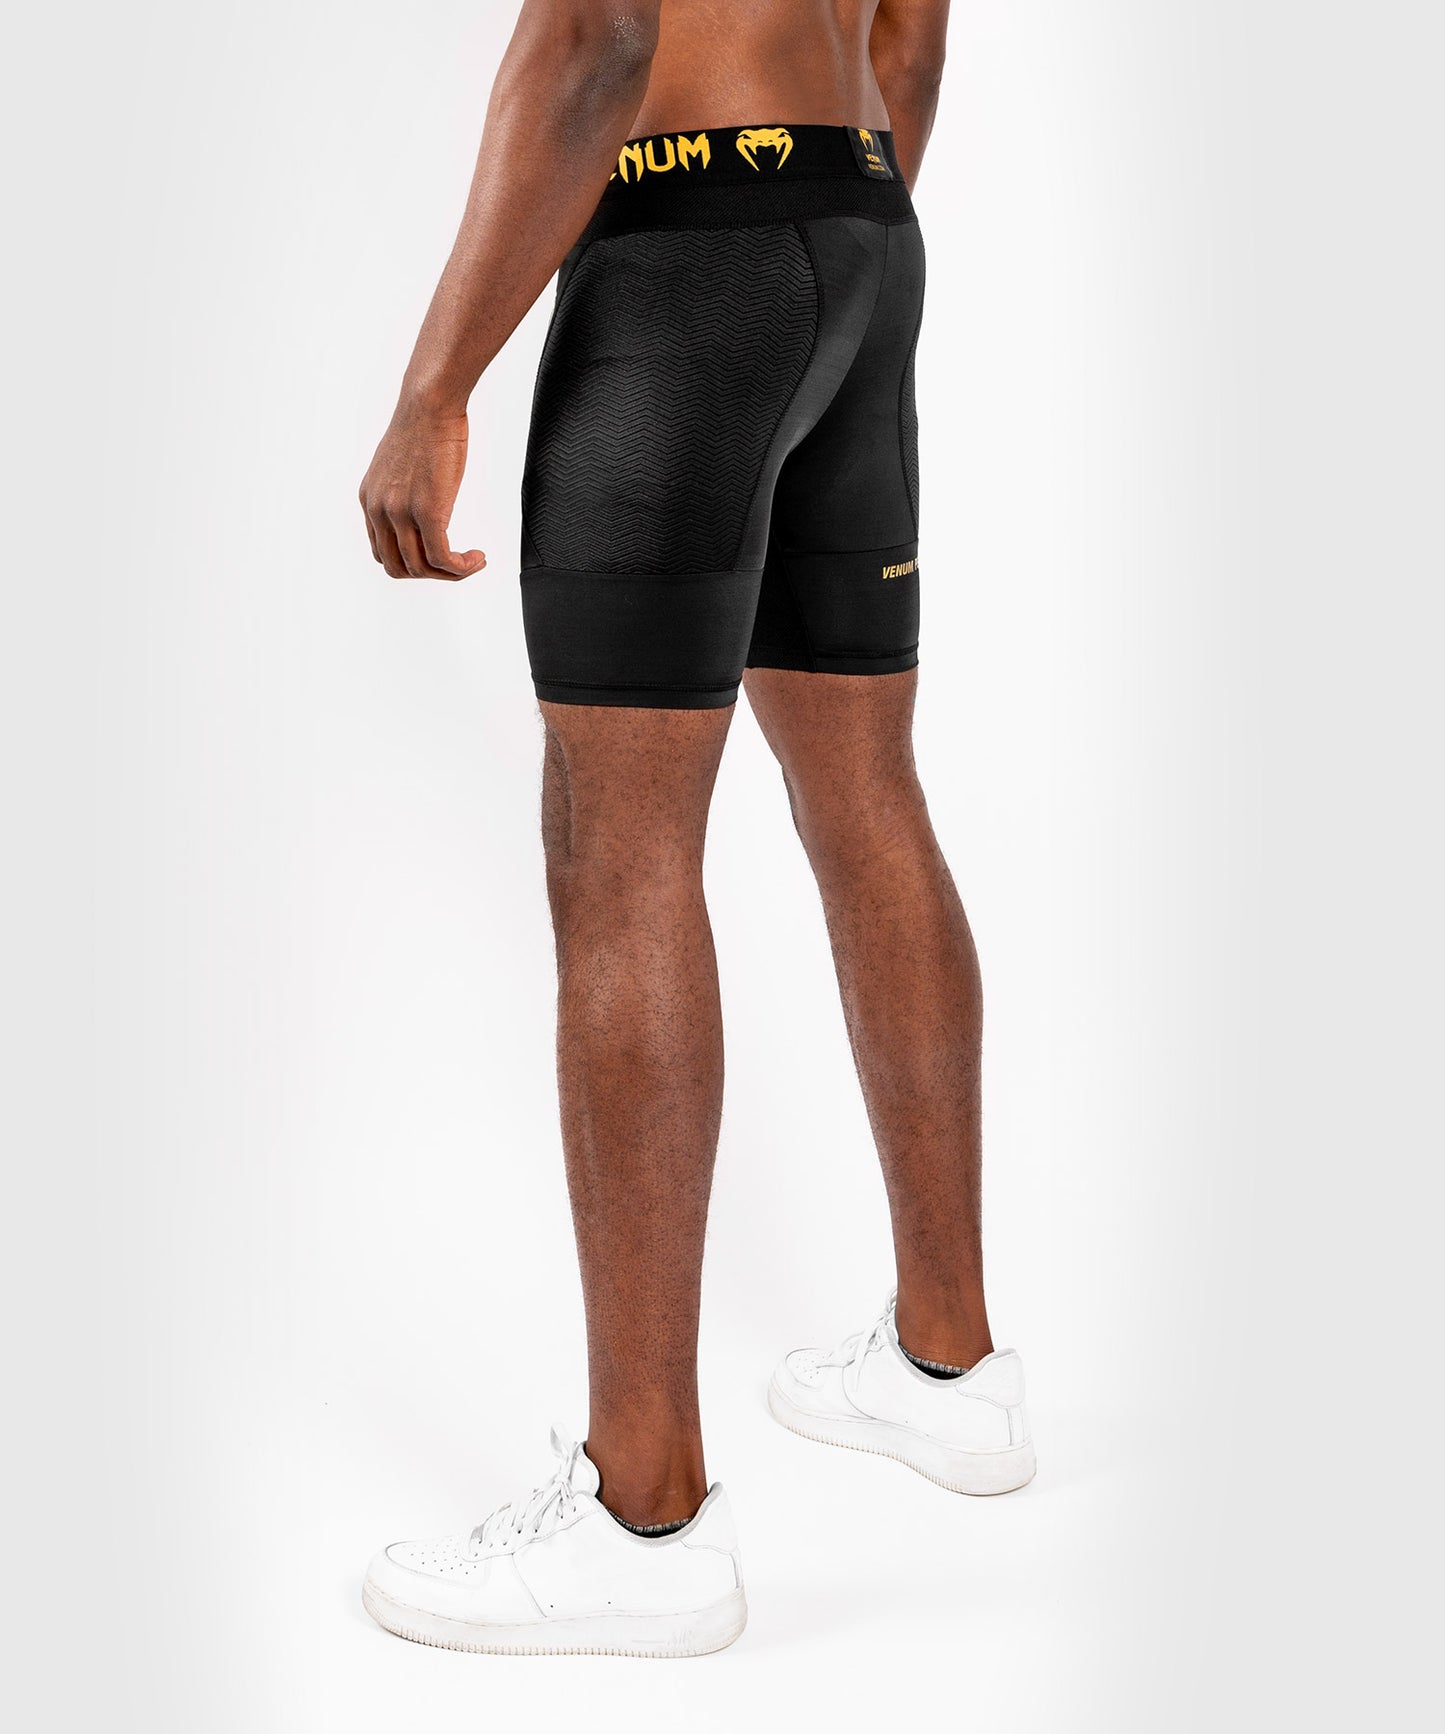 Pantalones de cortos de compresión Venum G-Fit - Negro/Oro